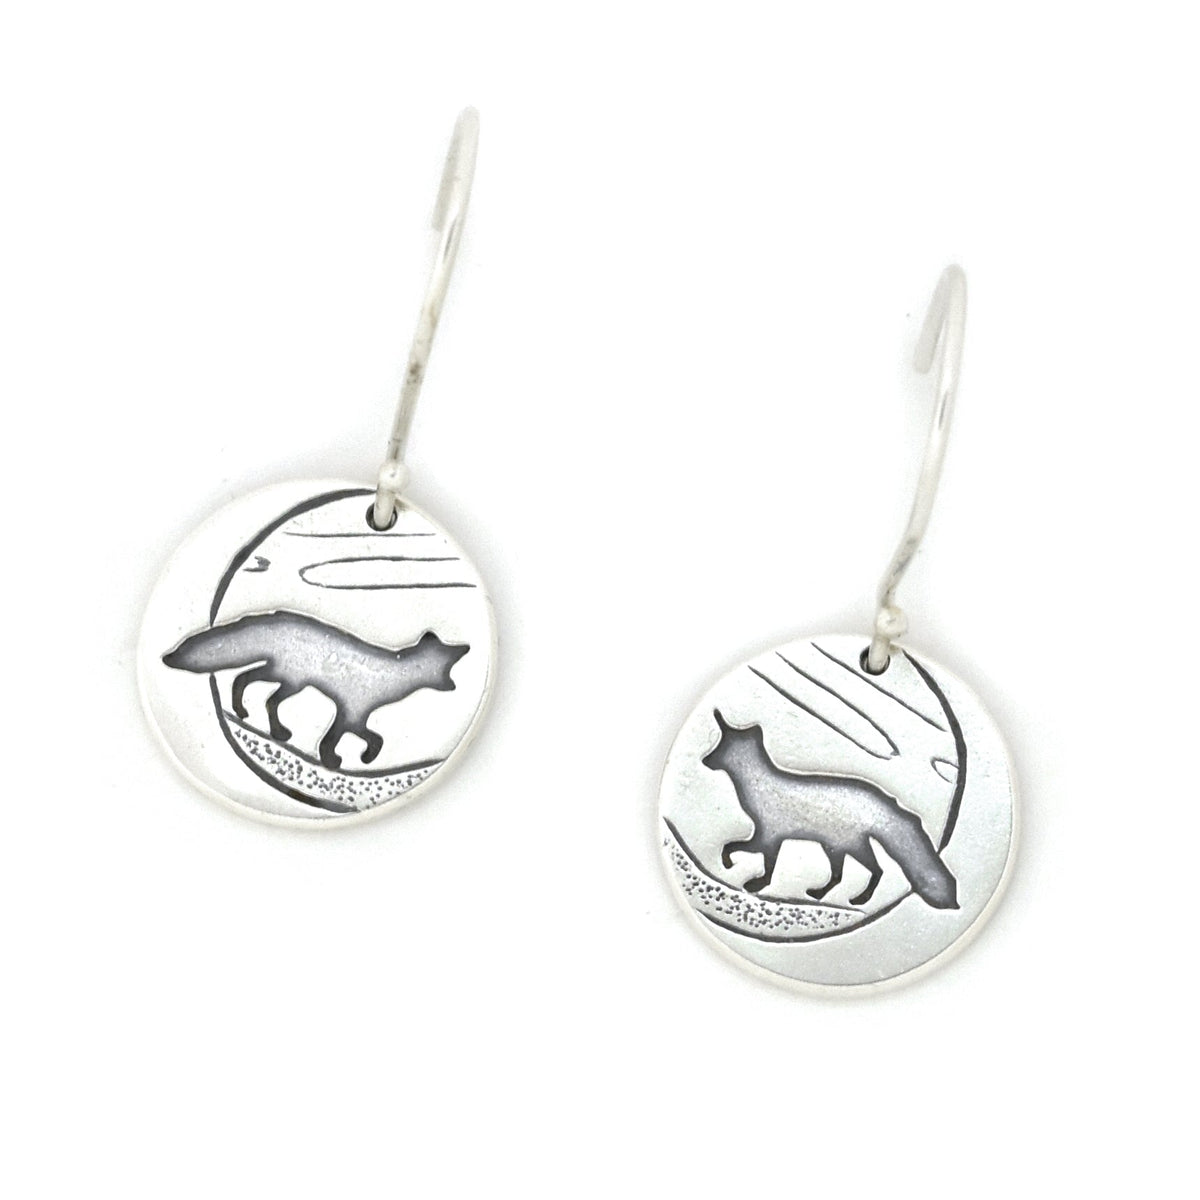 Small Silver Fox Earrings - Silver Earrings   6992 - handmade by Beth Millner Jewelry